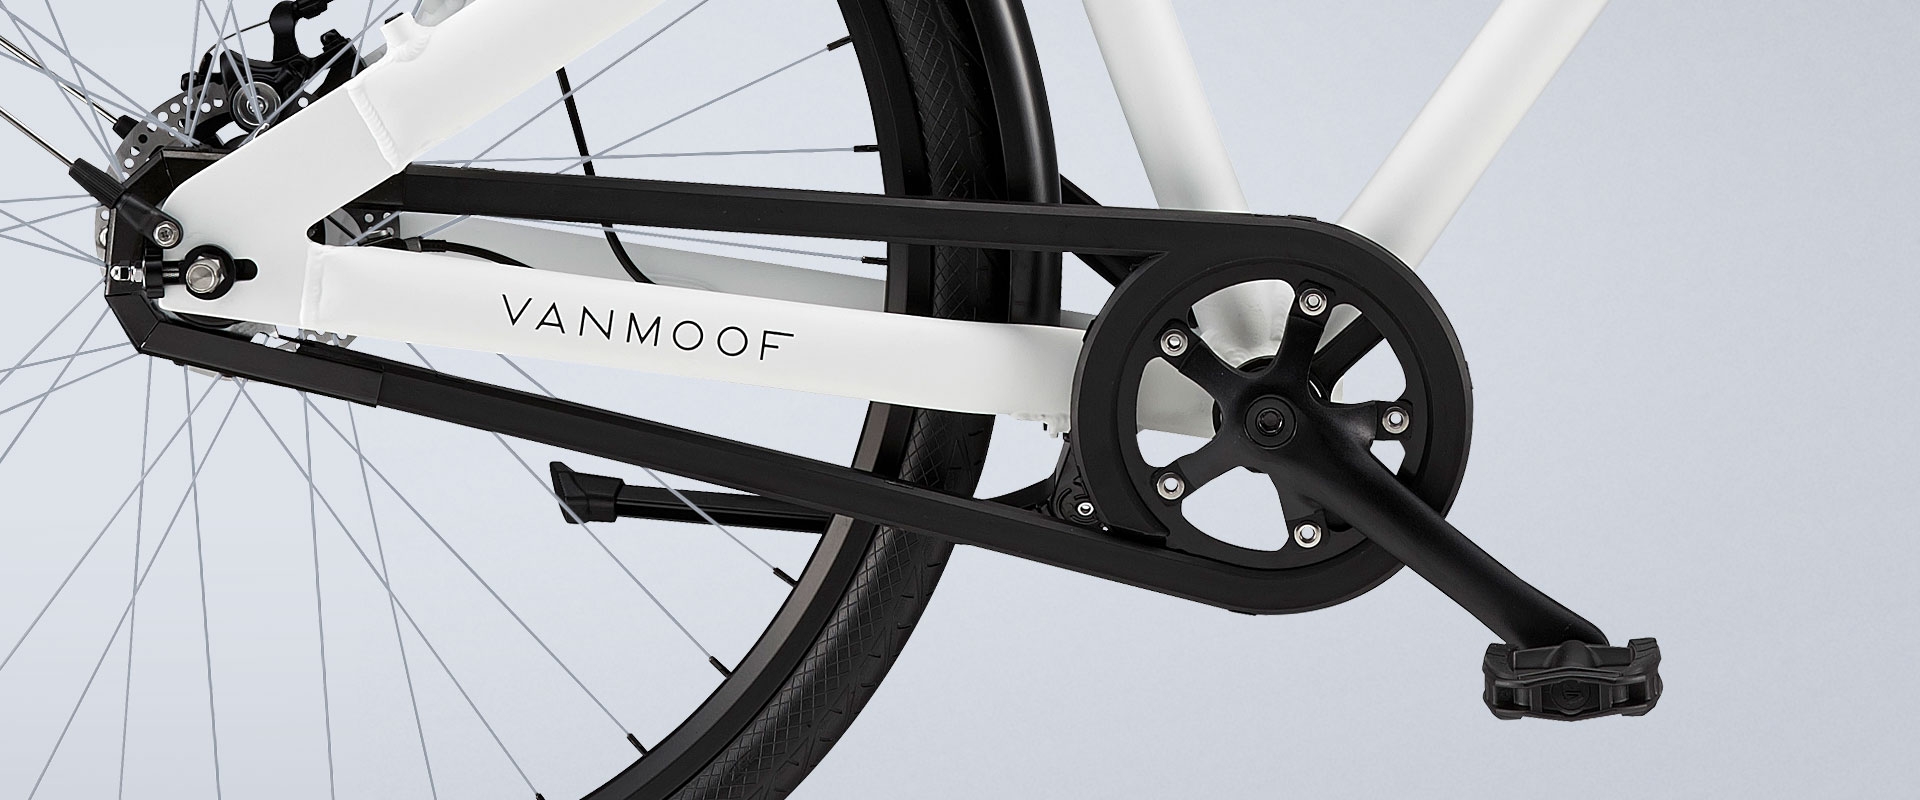 VanMoof drop down standard fiets